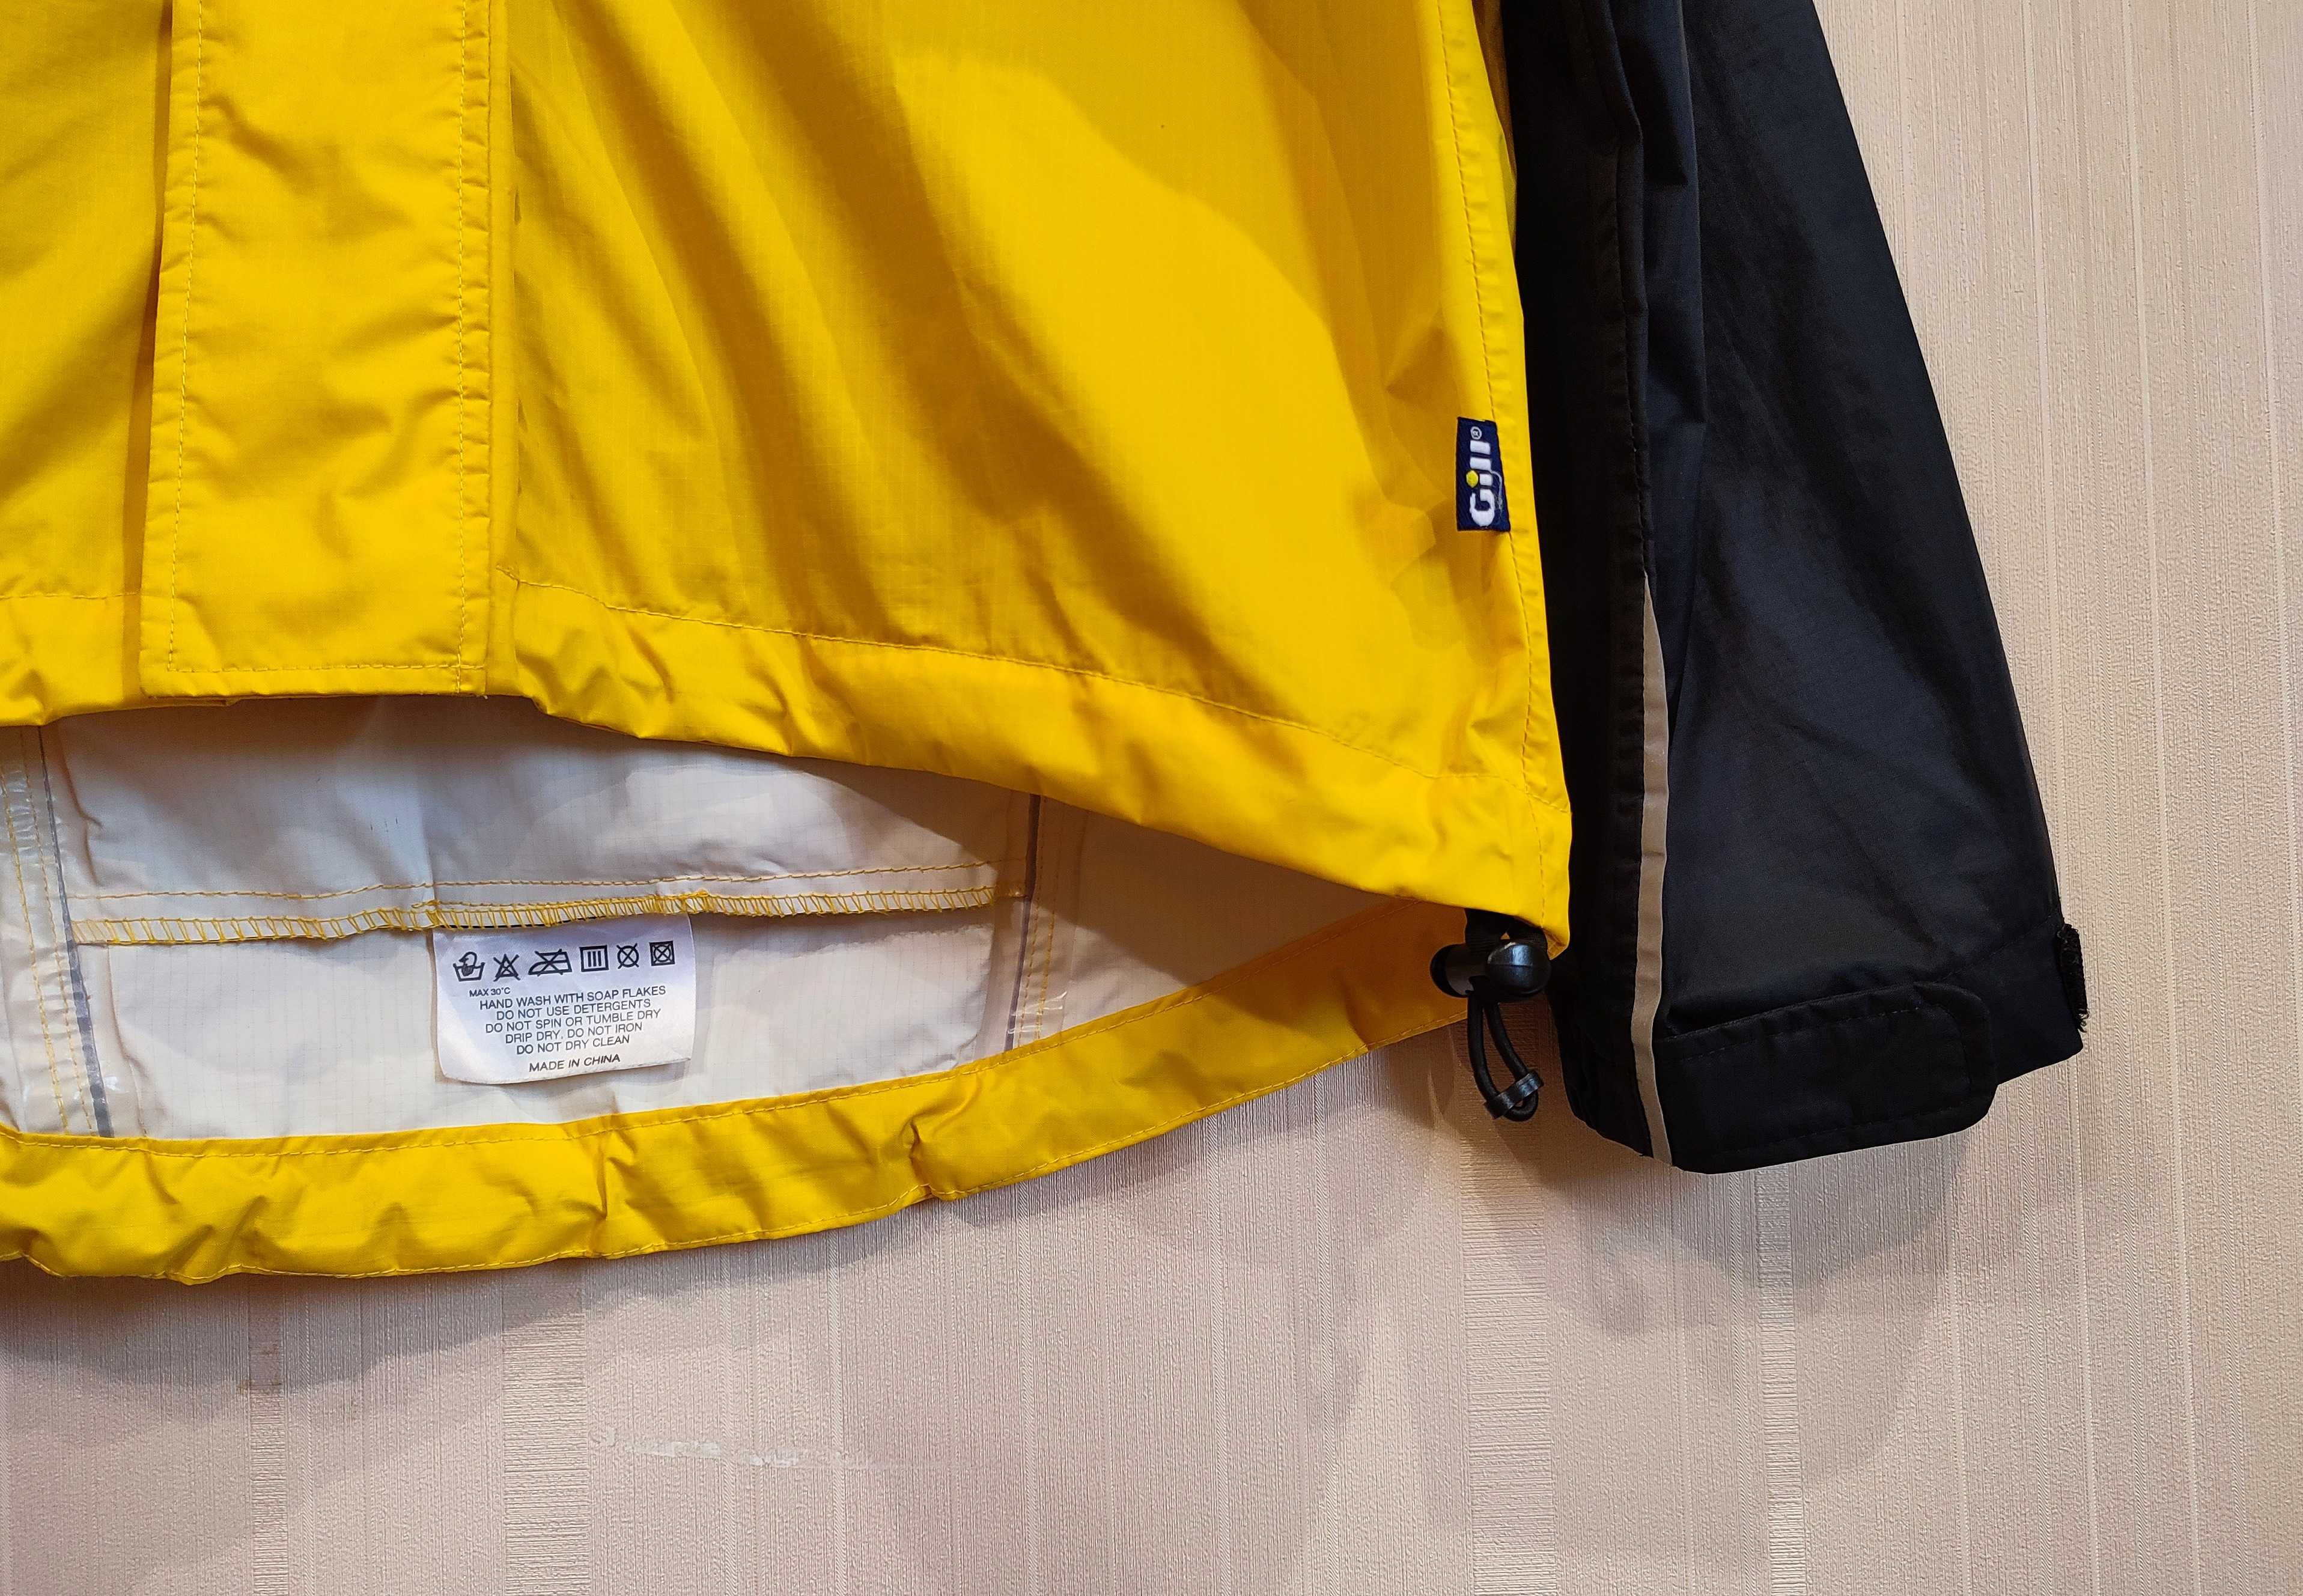 Gill мужская яхтенная куртка дождевик черно желтого цвета на мембране